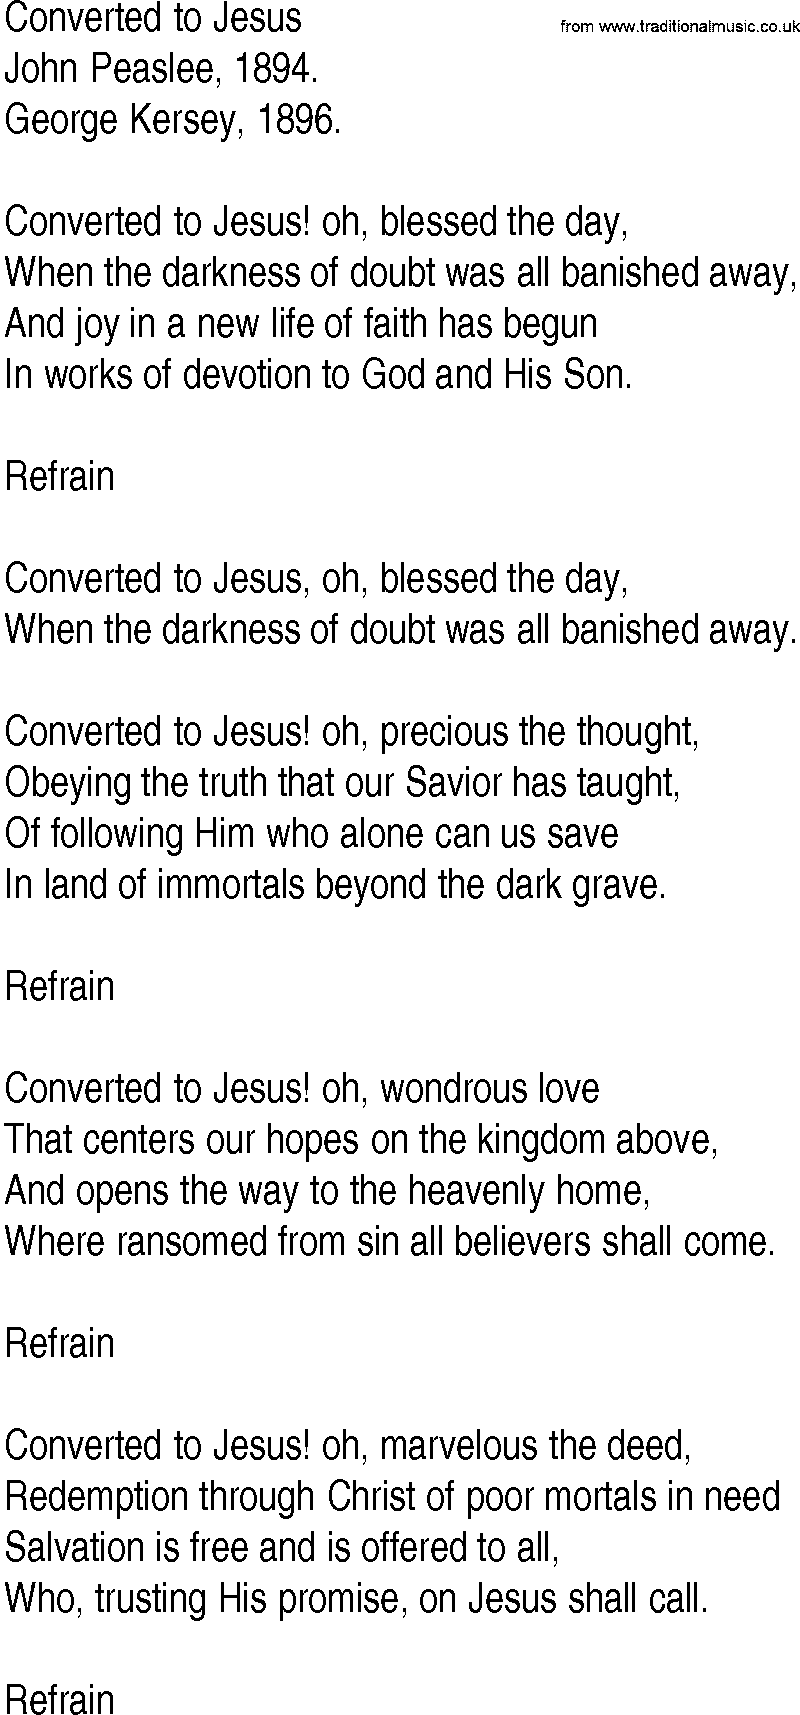 Hymn and Gospel Song: Converted to Jesus by John Peaslee lyrics